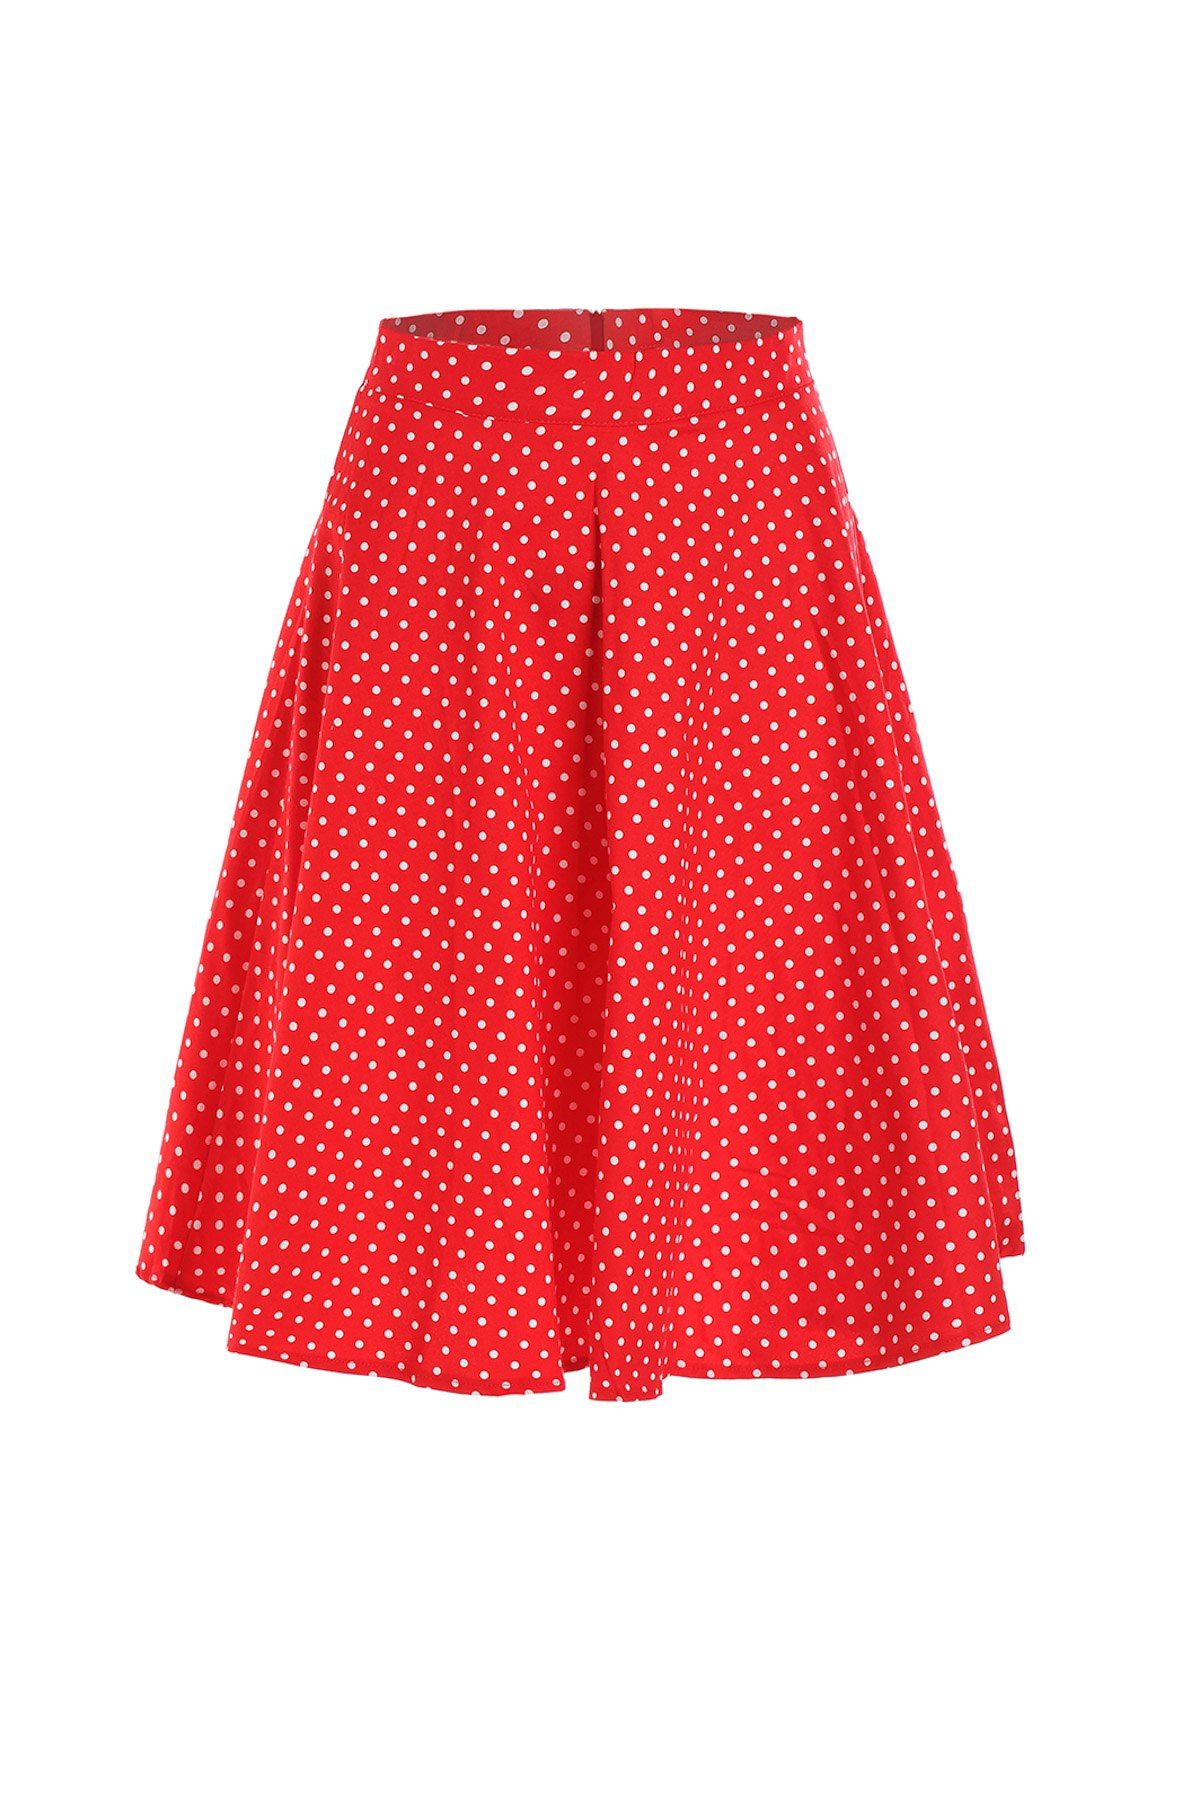 [41% OFF] 2021 Charming Polka Dot Printed High Waist Ball Skirt For ...